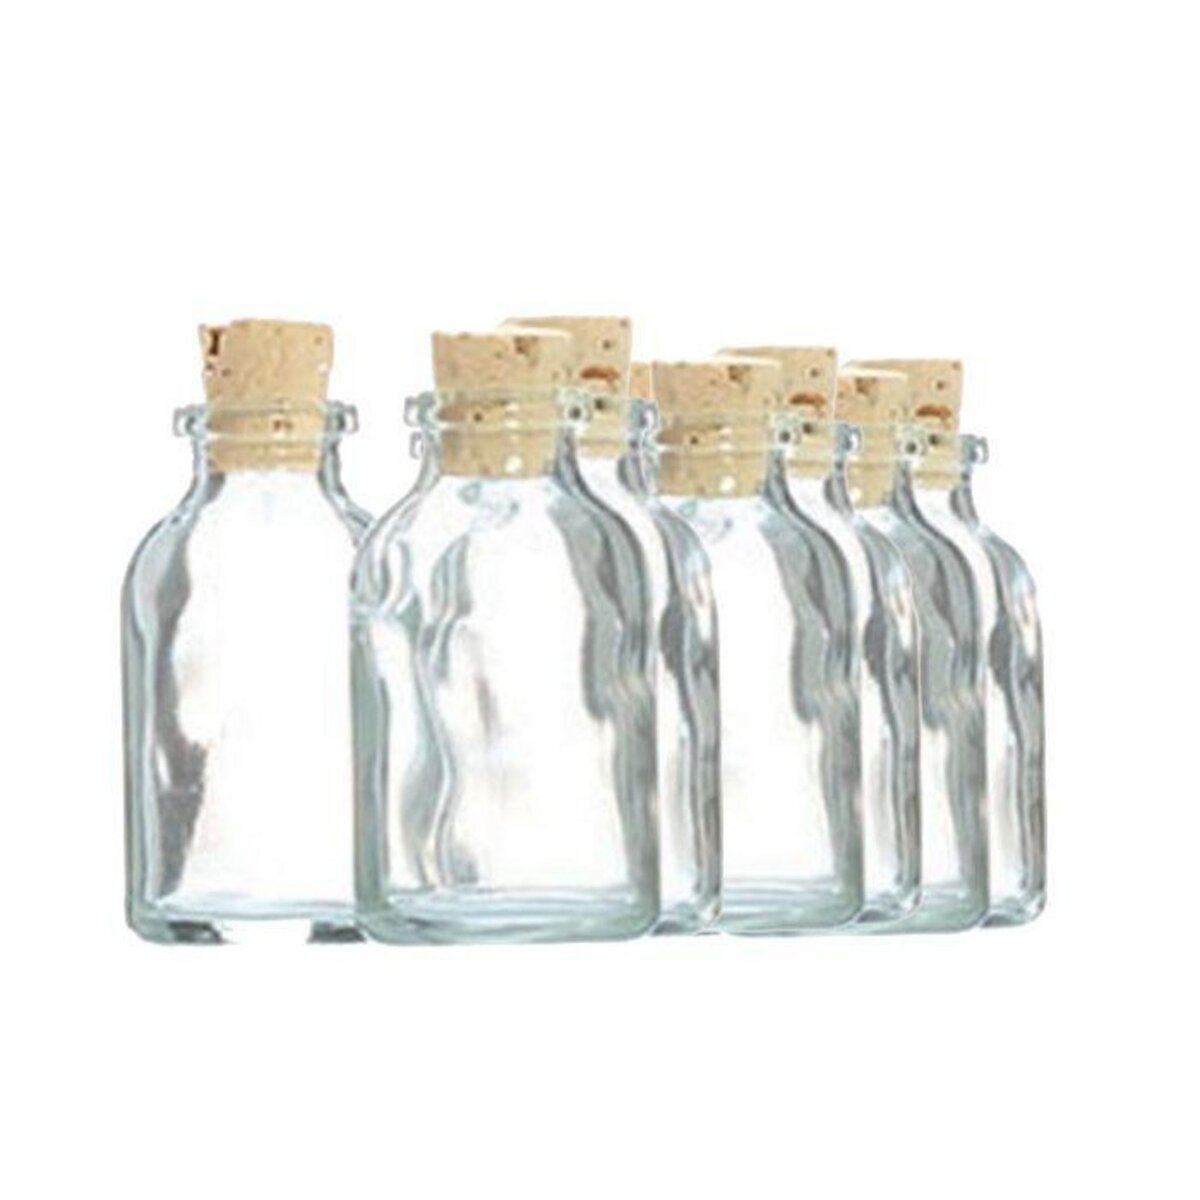 Graine créative 10 mini bouteilles en verre 6 cm avec bouchon liège